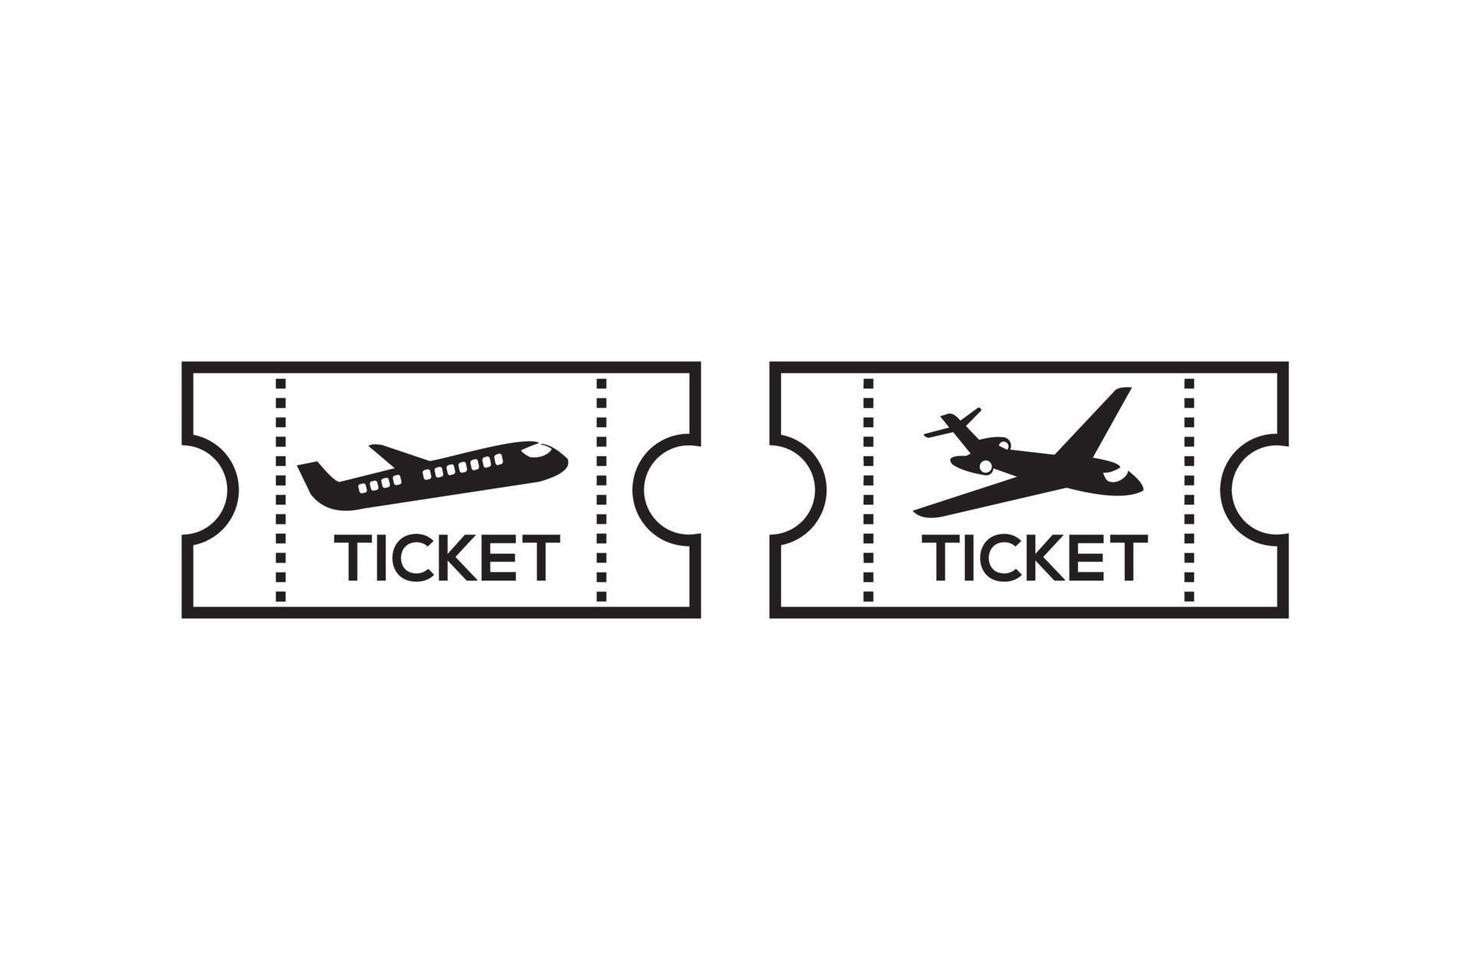 biglietto aereo vettoriale. semplice stile artistico a linea piatta vettore